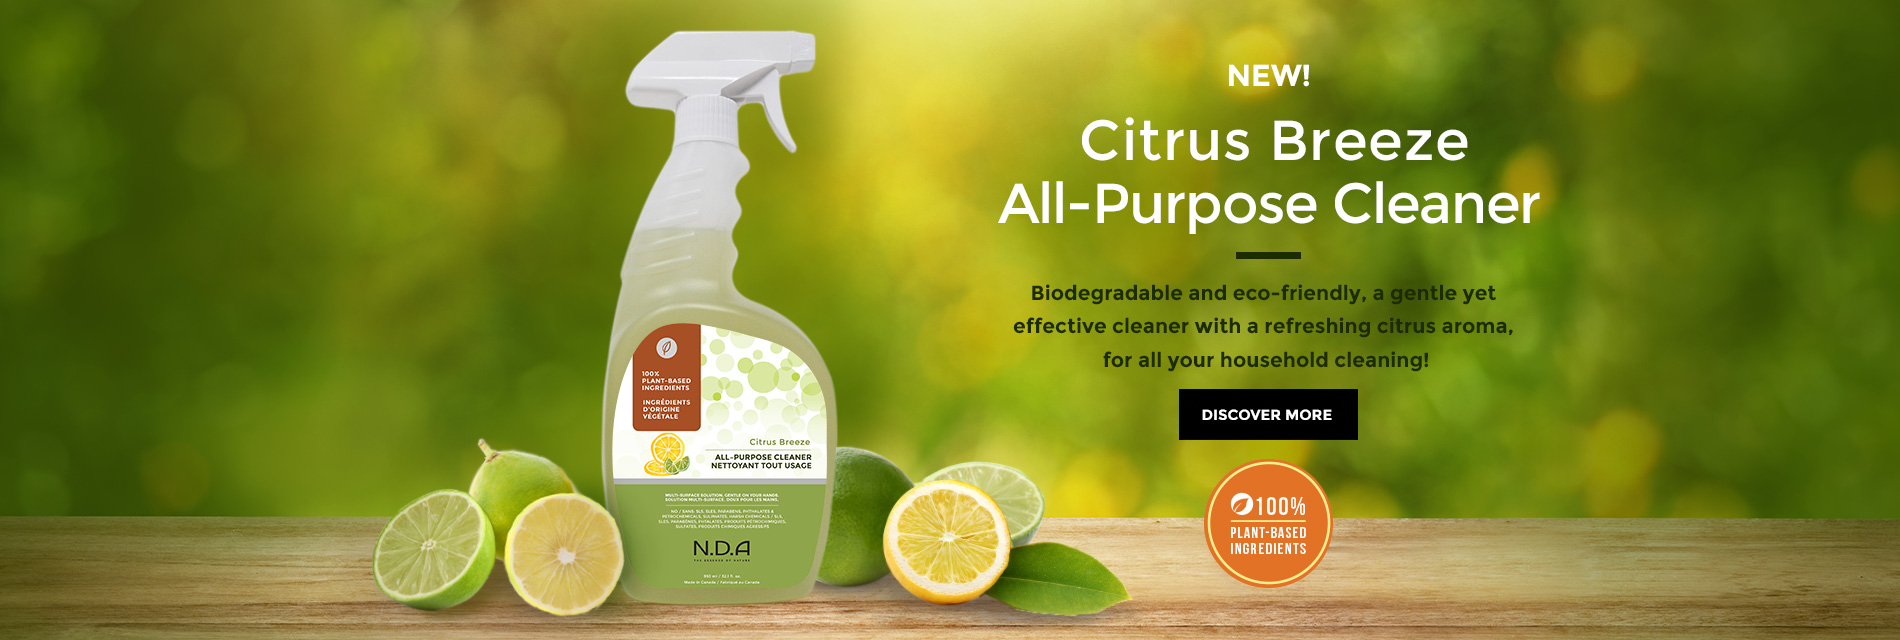 Citrus Breeze All-Purpose Cleaner